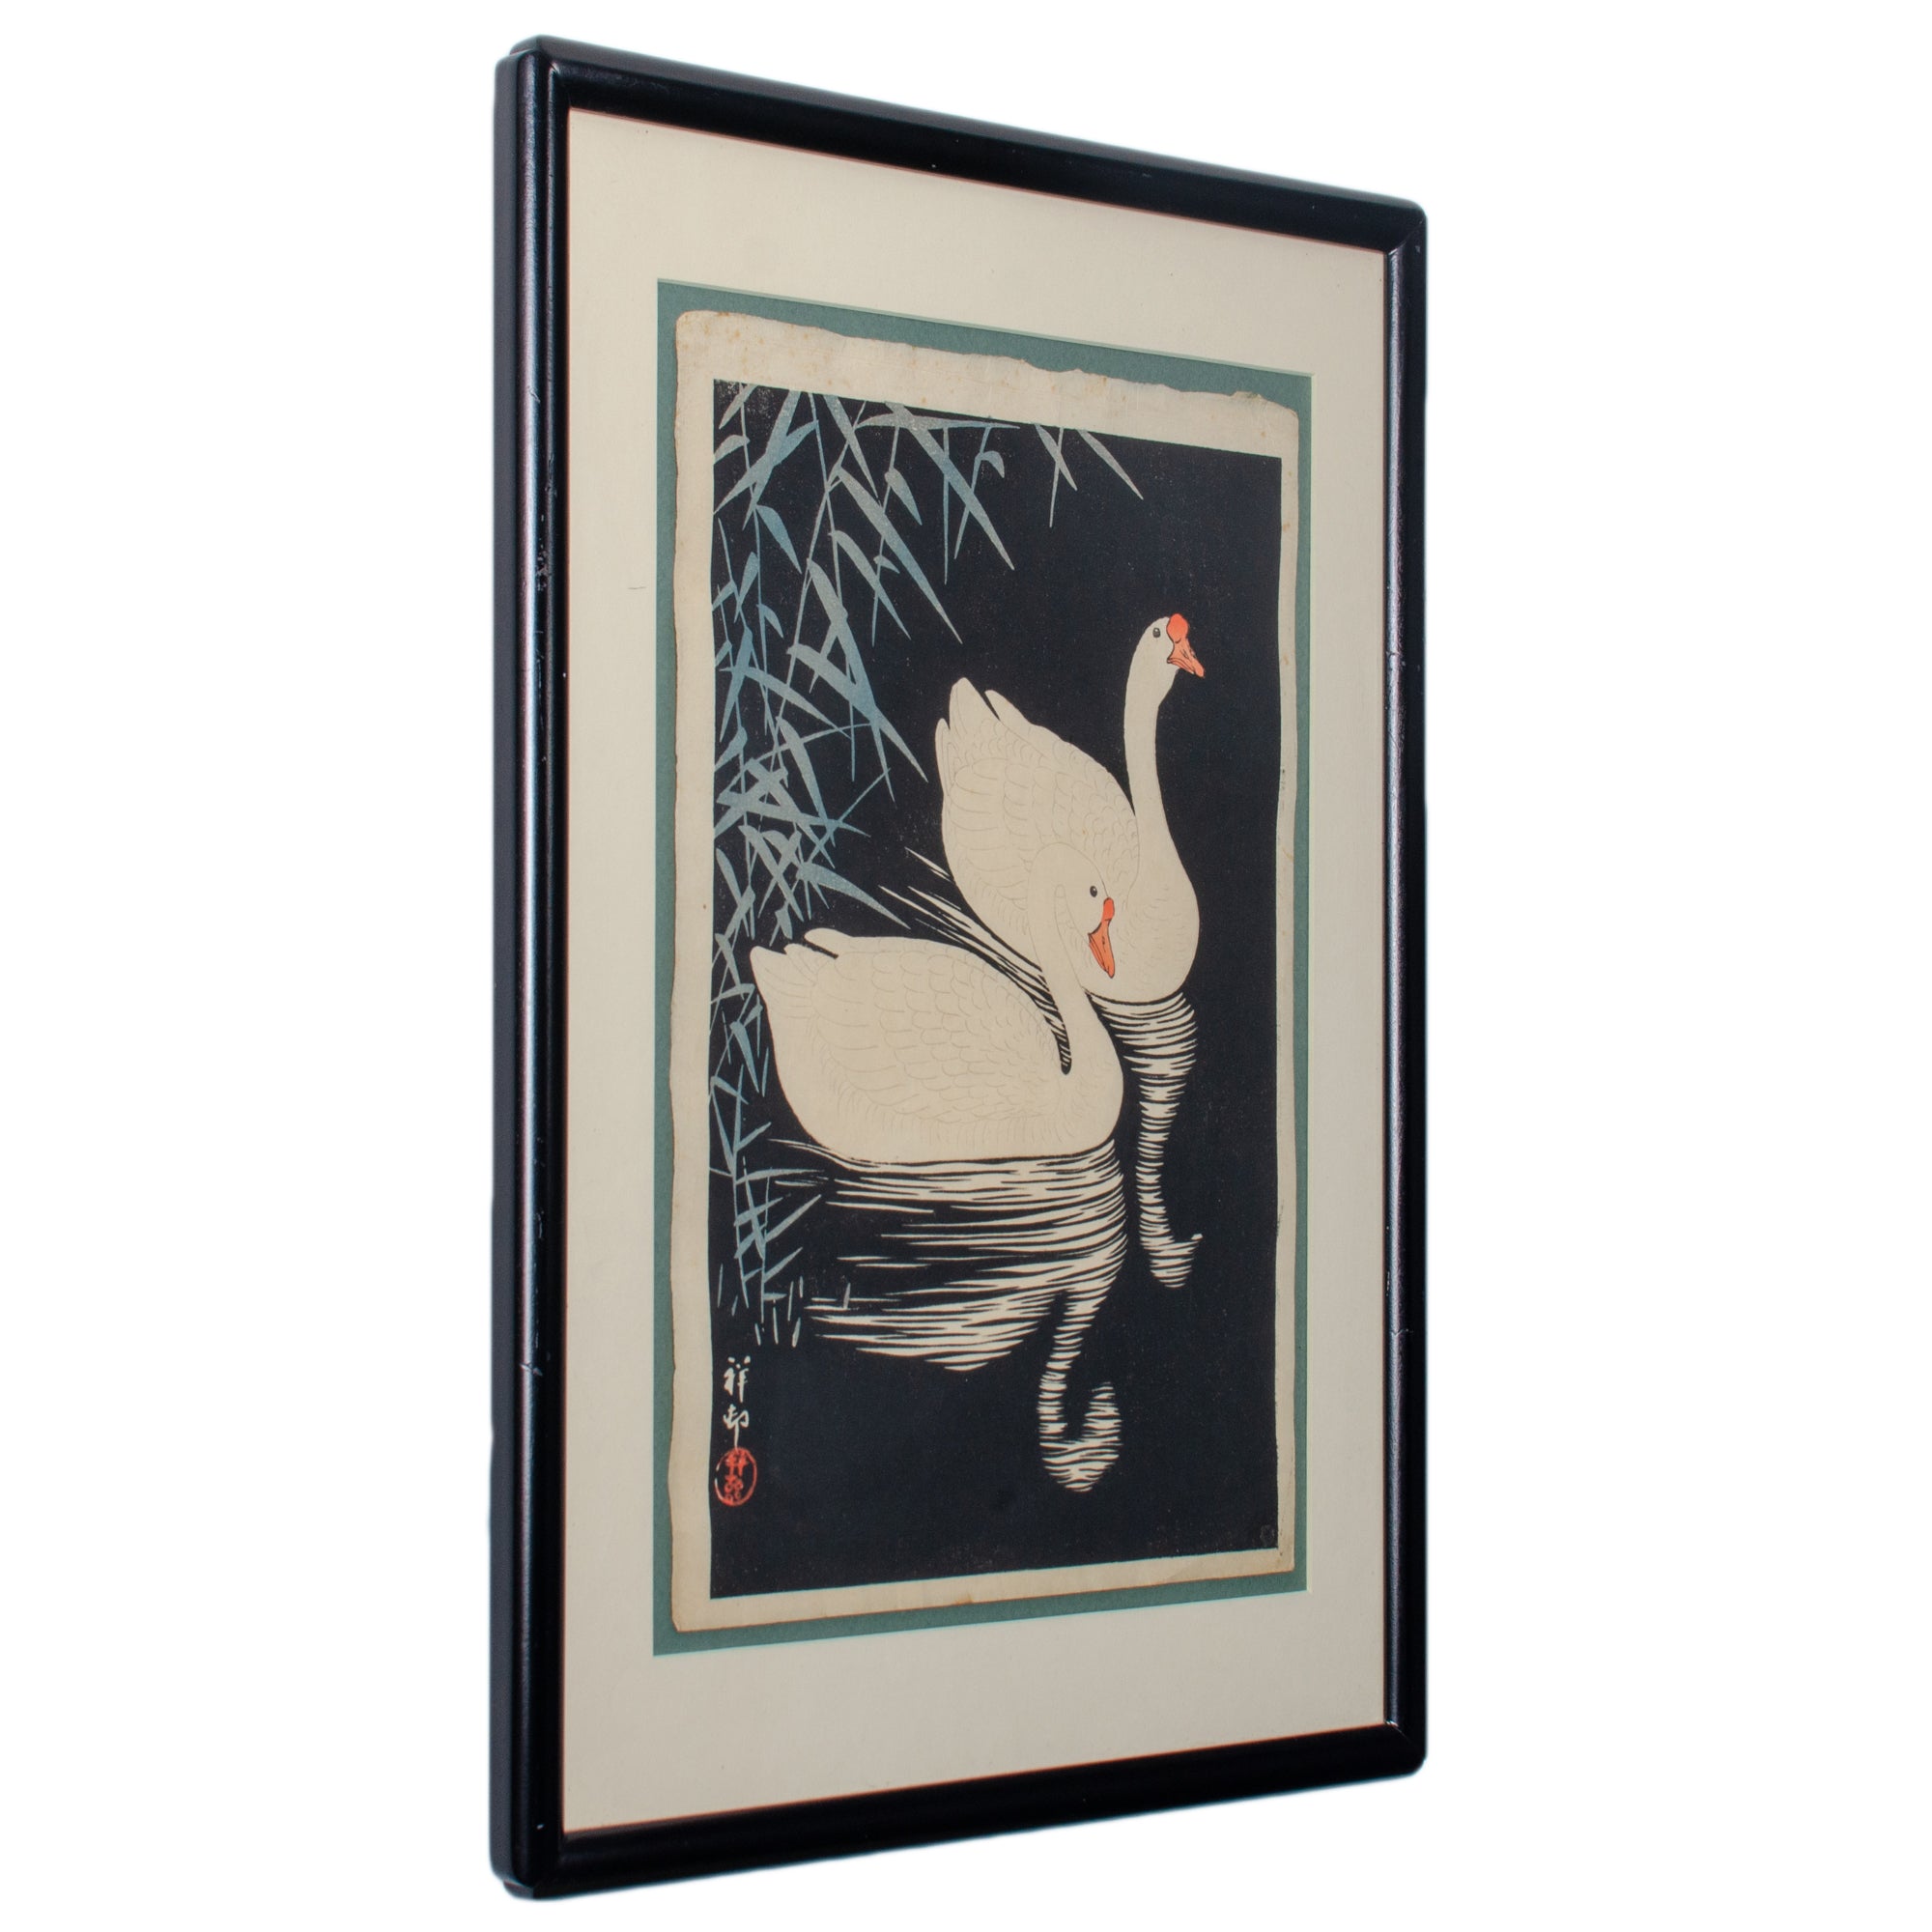 Ohara Koson (Shoson) Japanese Woodblock Prints - A Pair